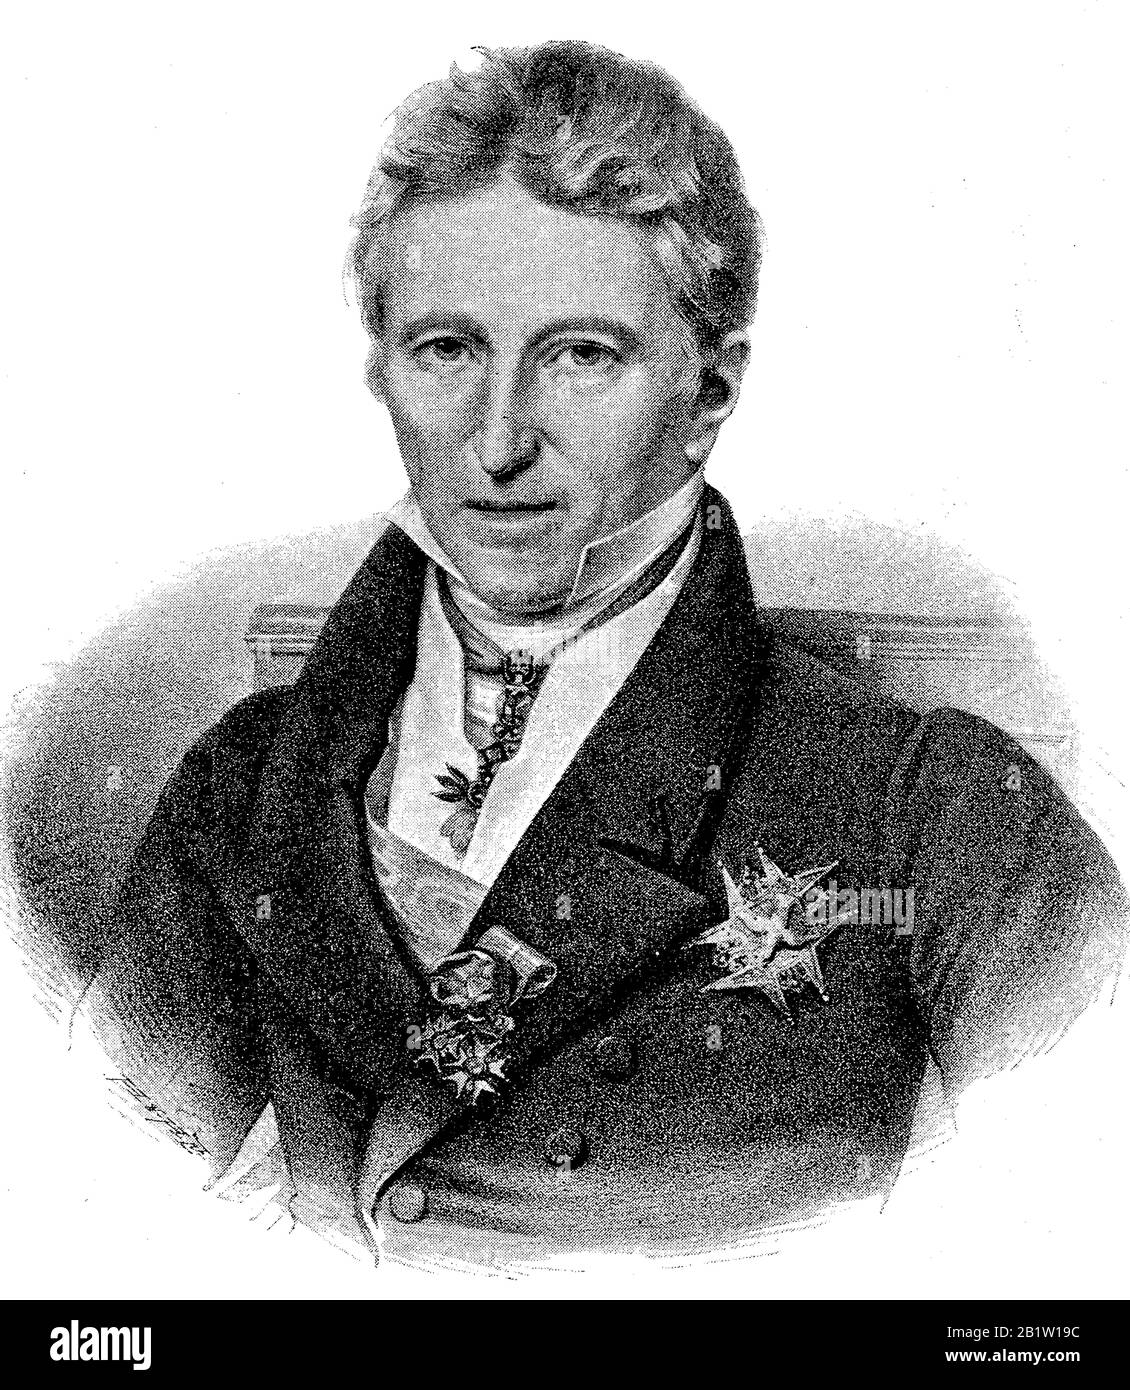 Jean-Baptiste Guillaume Joseph Marie Anne Séraphine, 1ère comte de Villele,  14 avril 1773 - 13 mars 1854, mieux connu tout simplement comme Joseph de  Villèle, était un homme d'État français / Jean